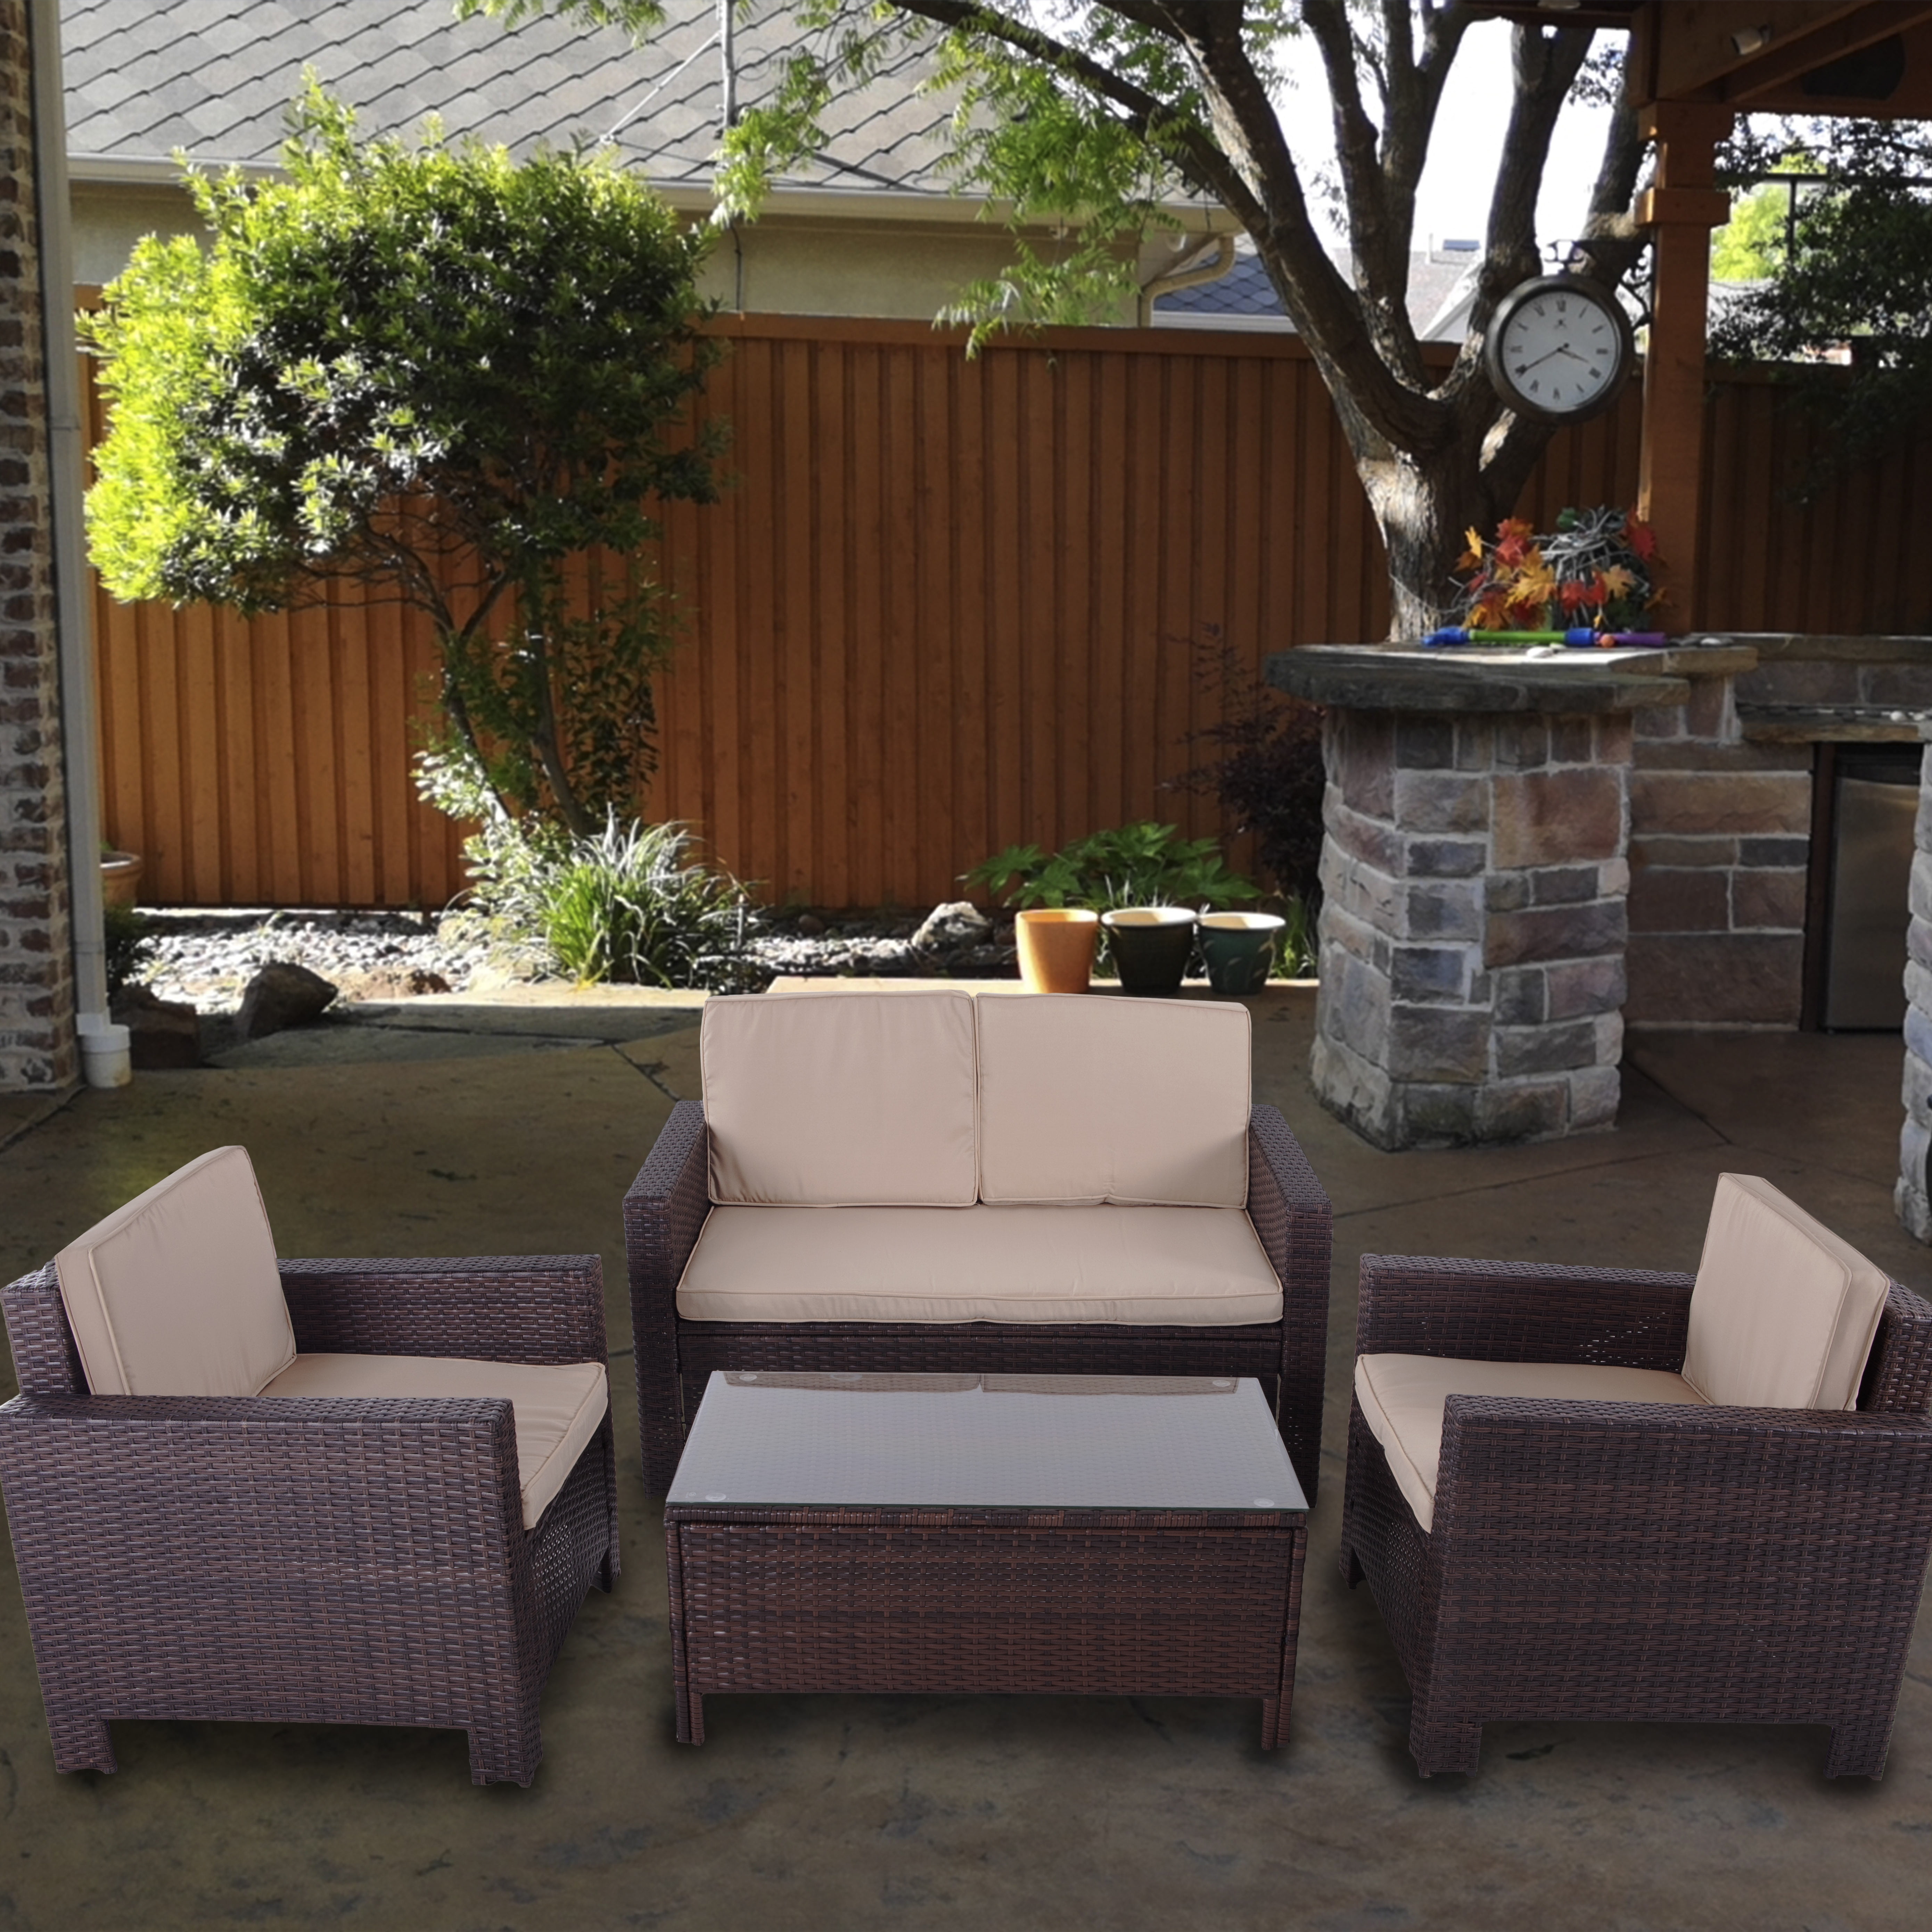 patiobox 4pcs outdoor patio brown rattan wicker furniture set beige